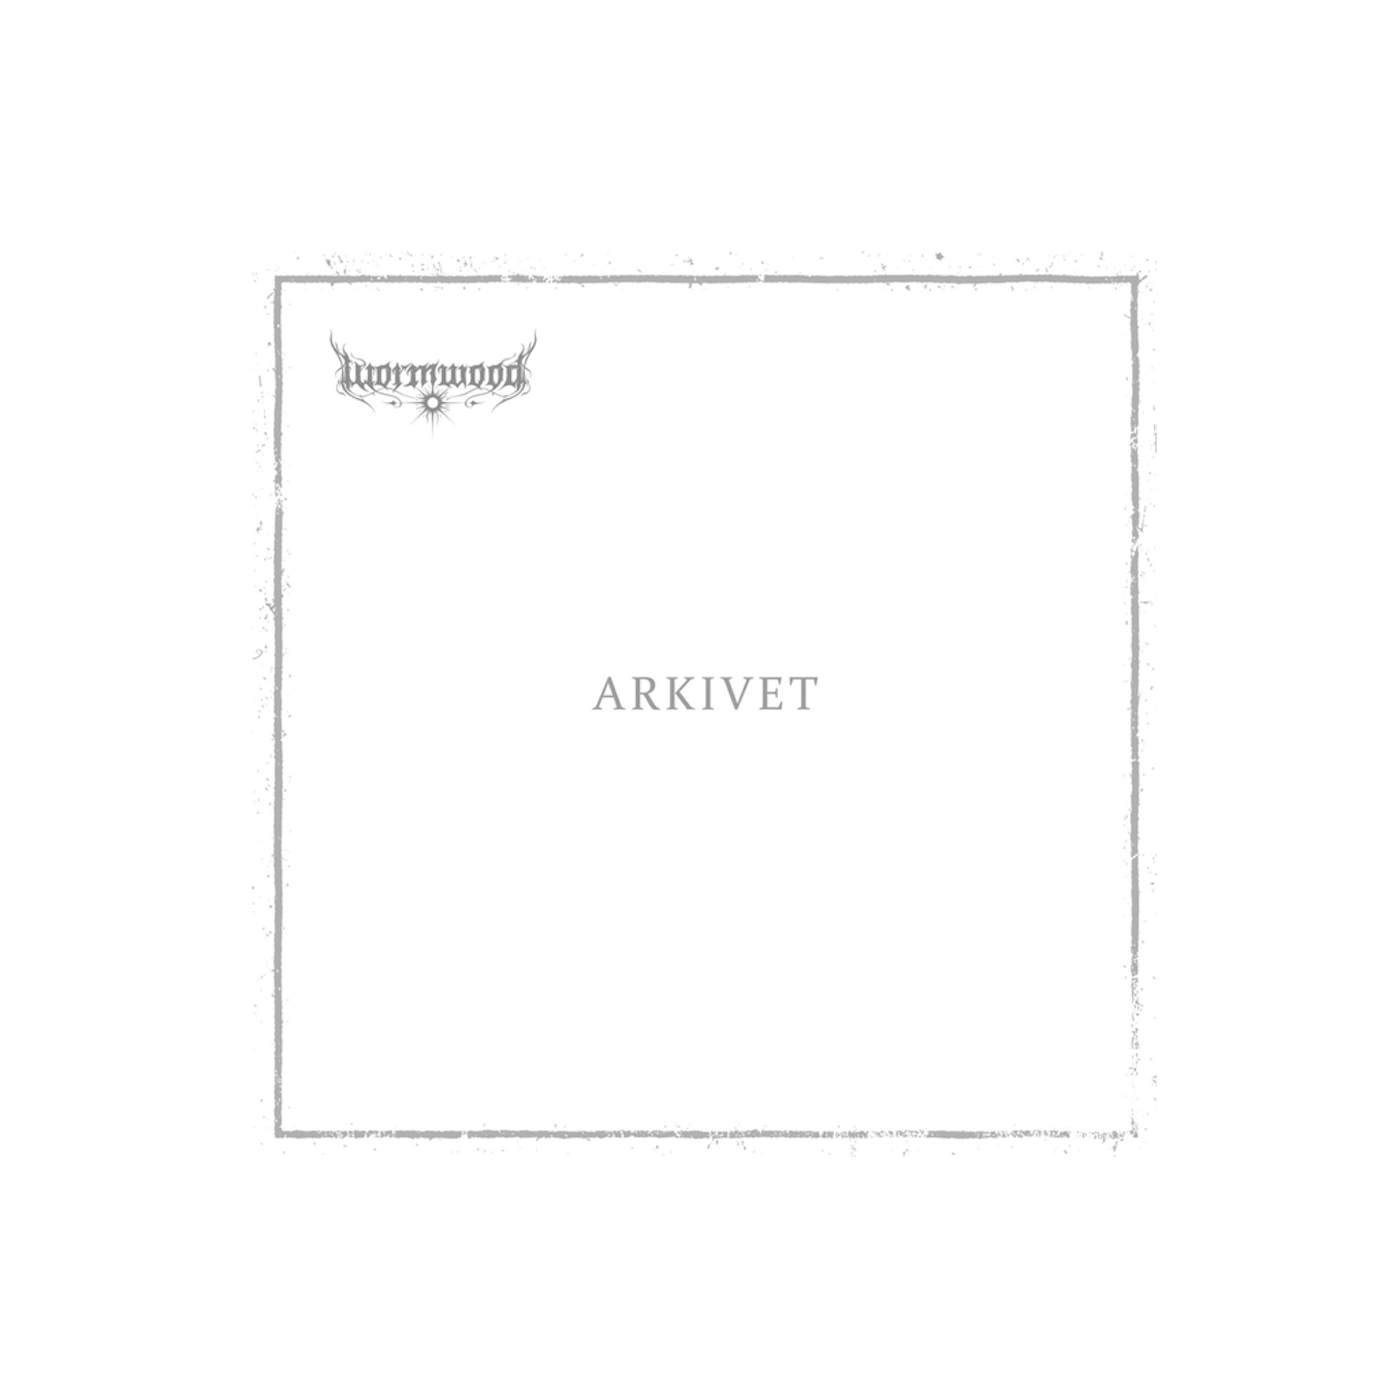 Wormwood - Arkivet (CD)